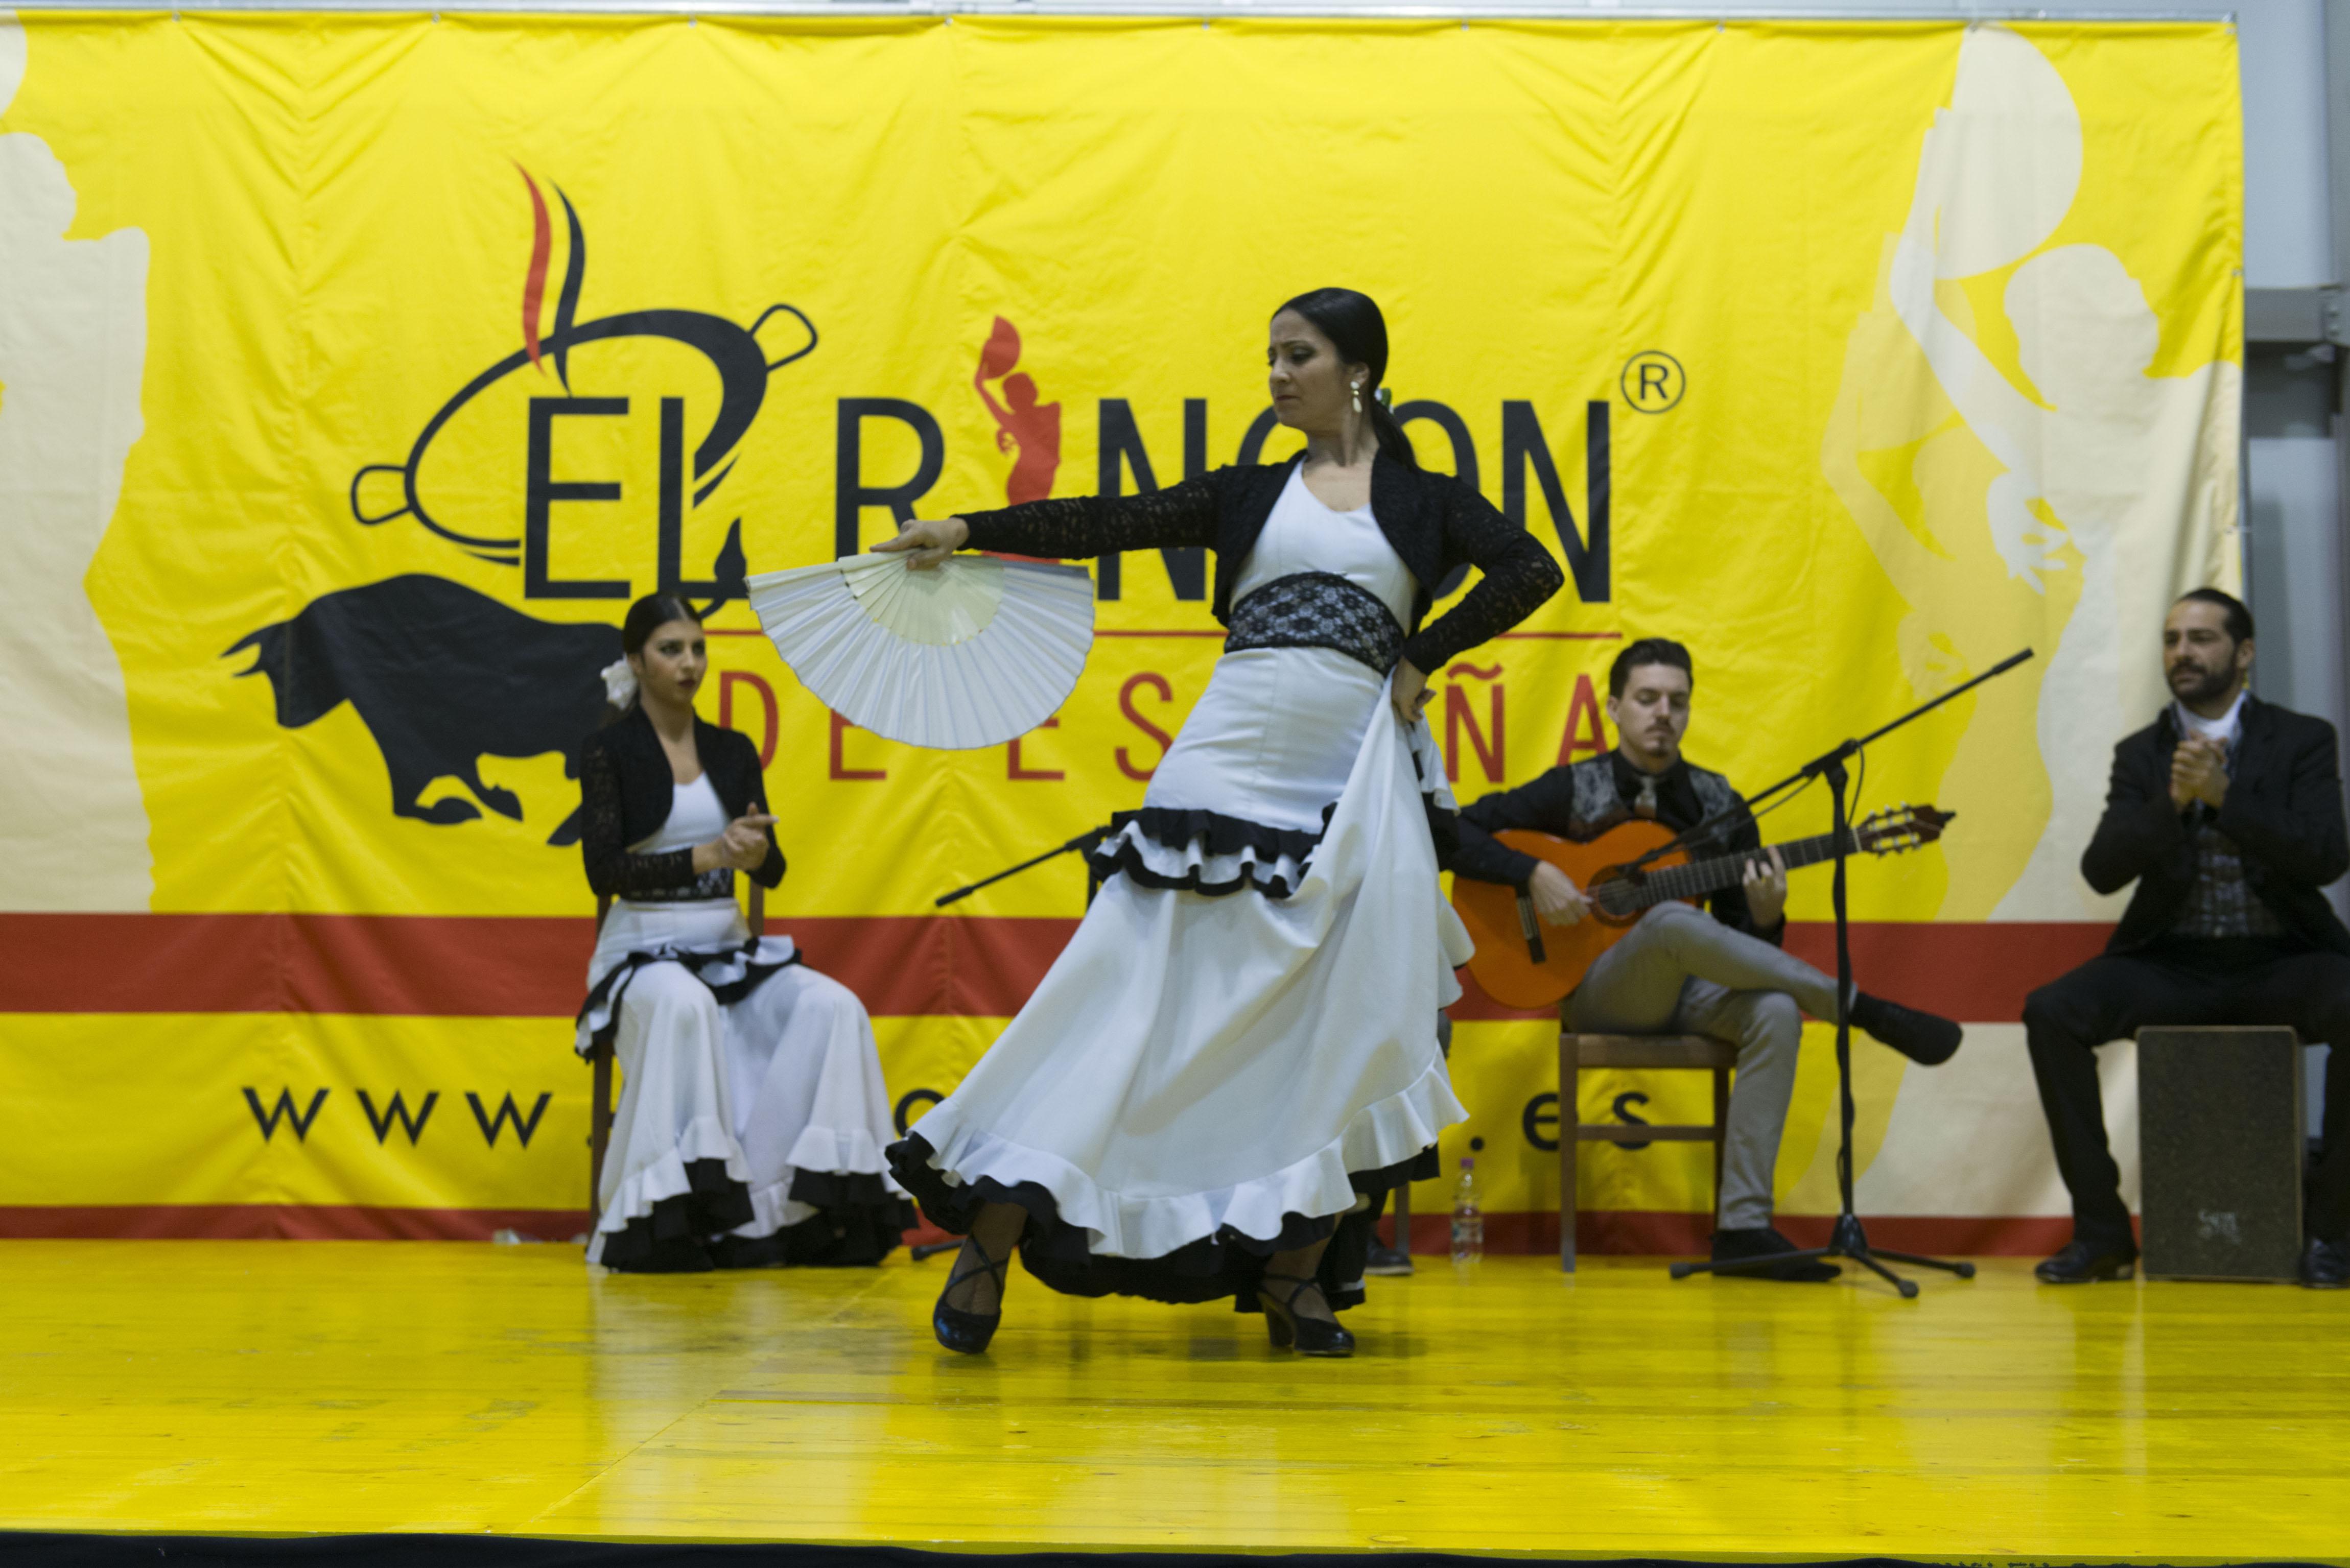 Esibizione di flamenco